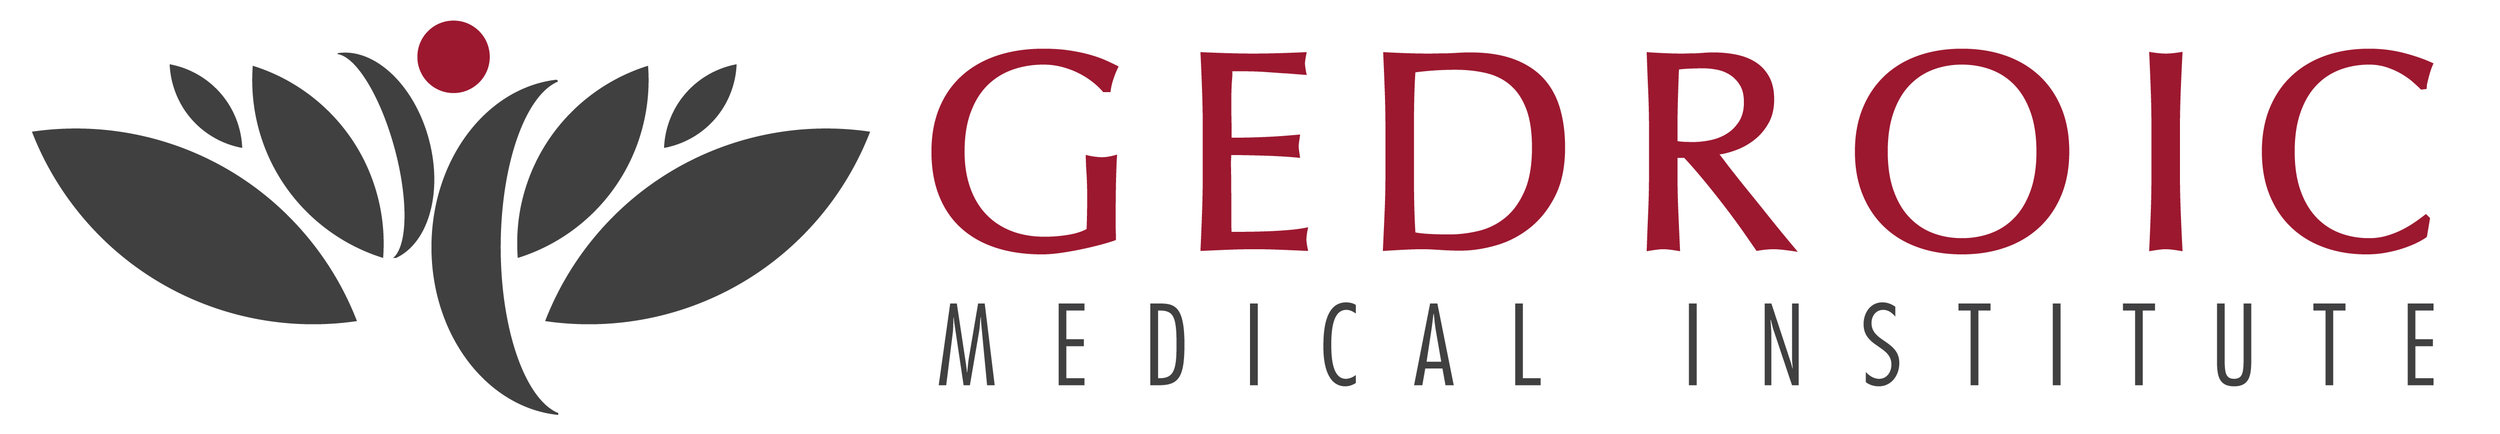 Gedroic Medical Institute